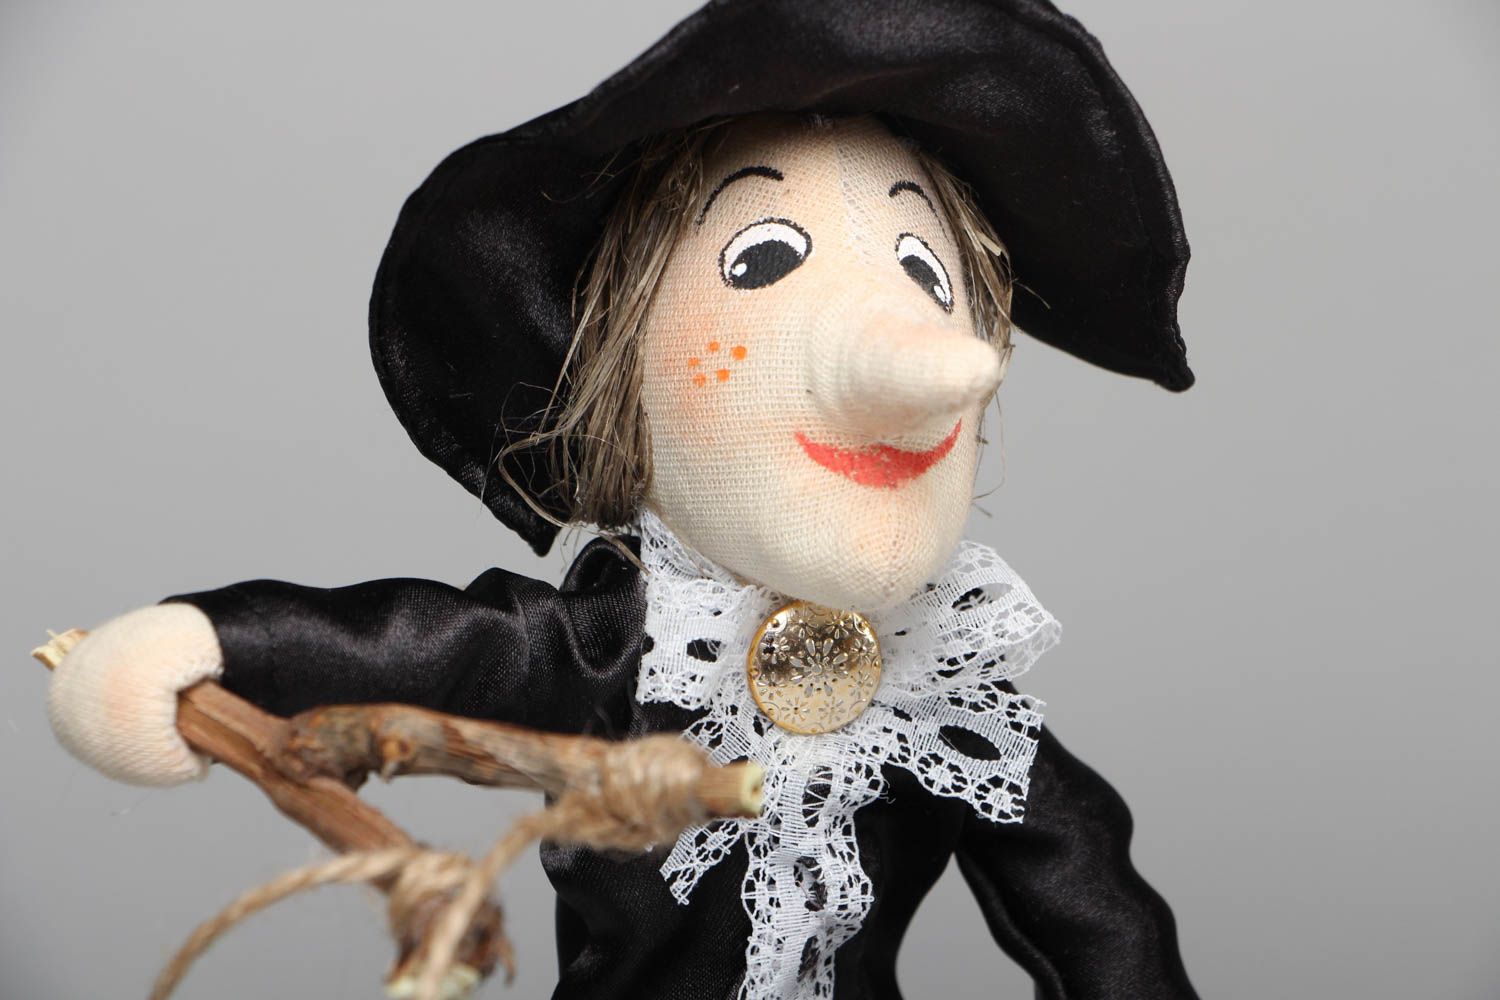 Textil Puppe handmade Dame in Schwarz foto 2